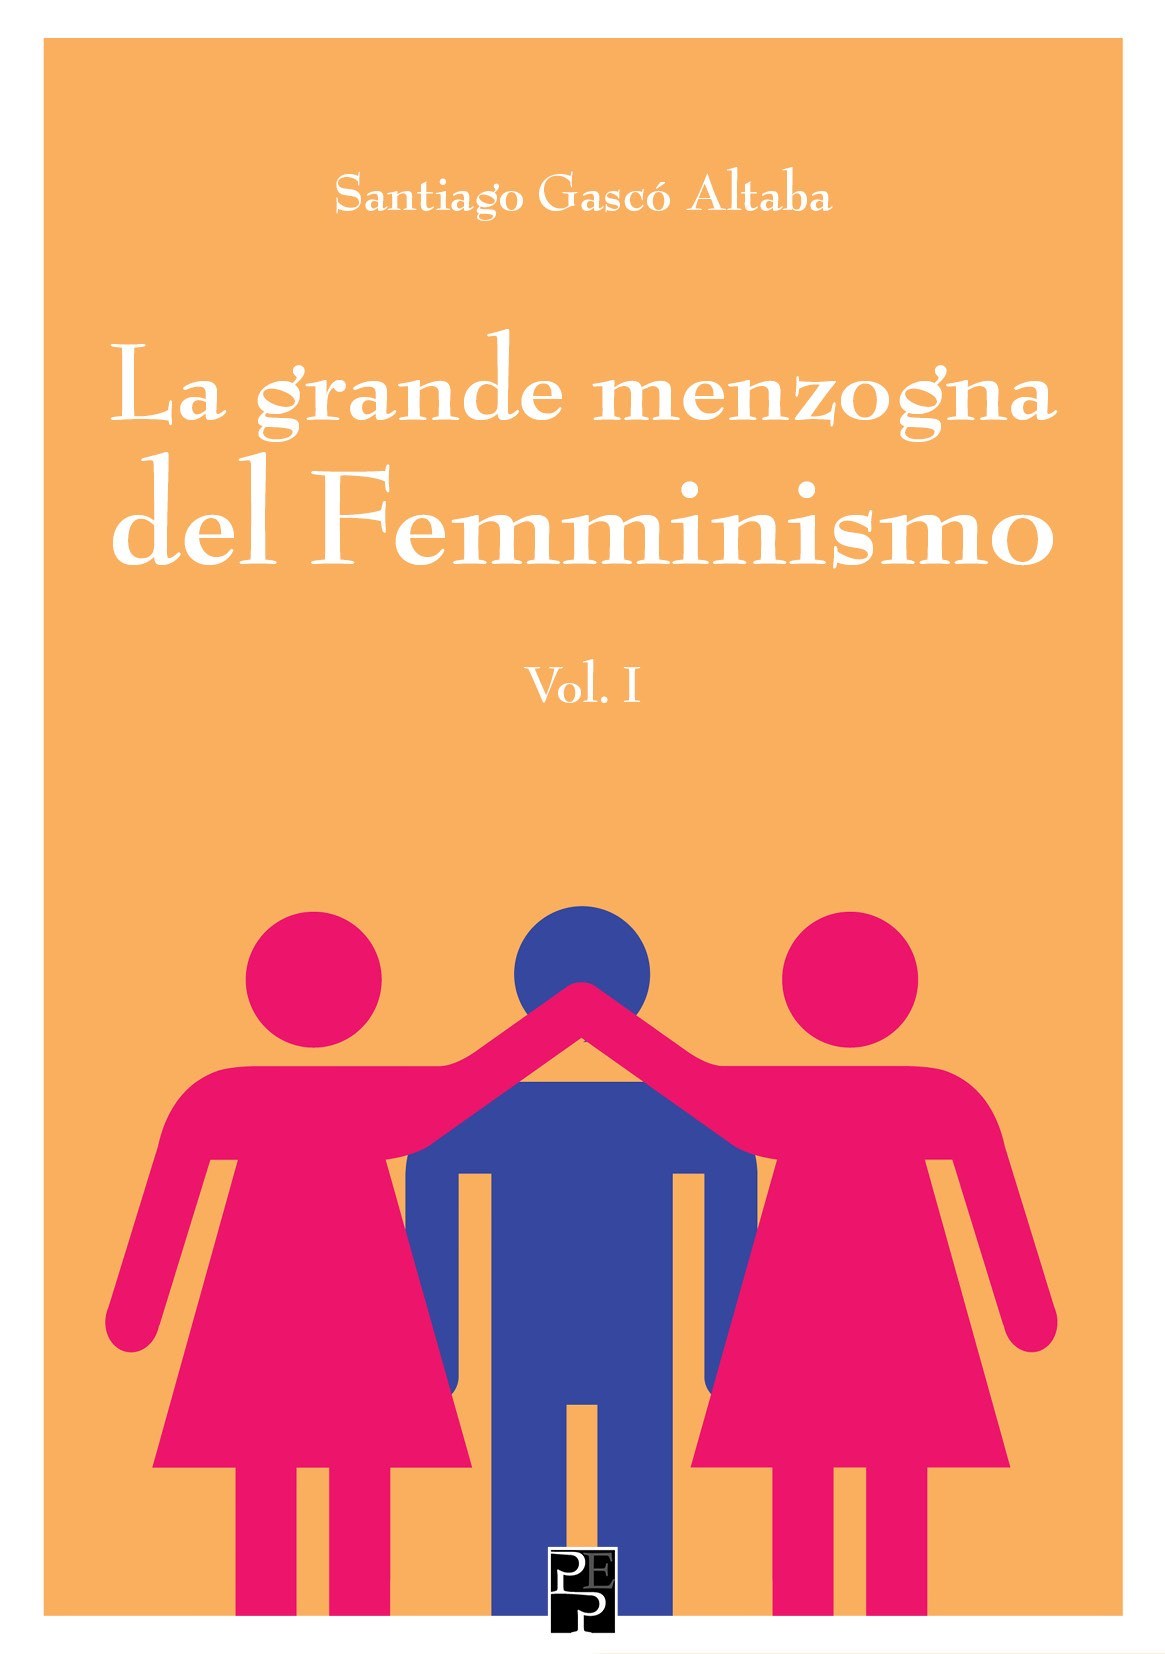 La-grande-menzogna-del-Femminismo_Cover